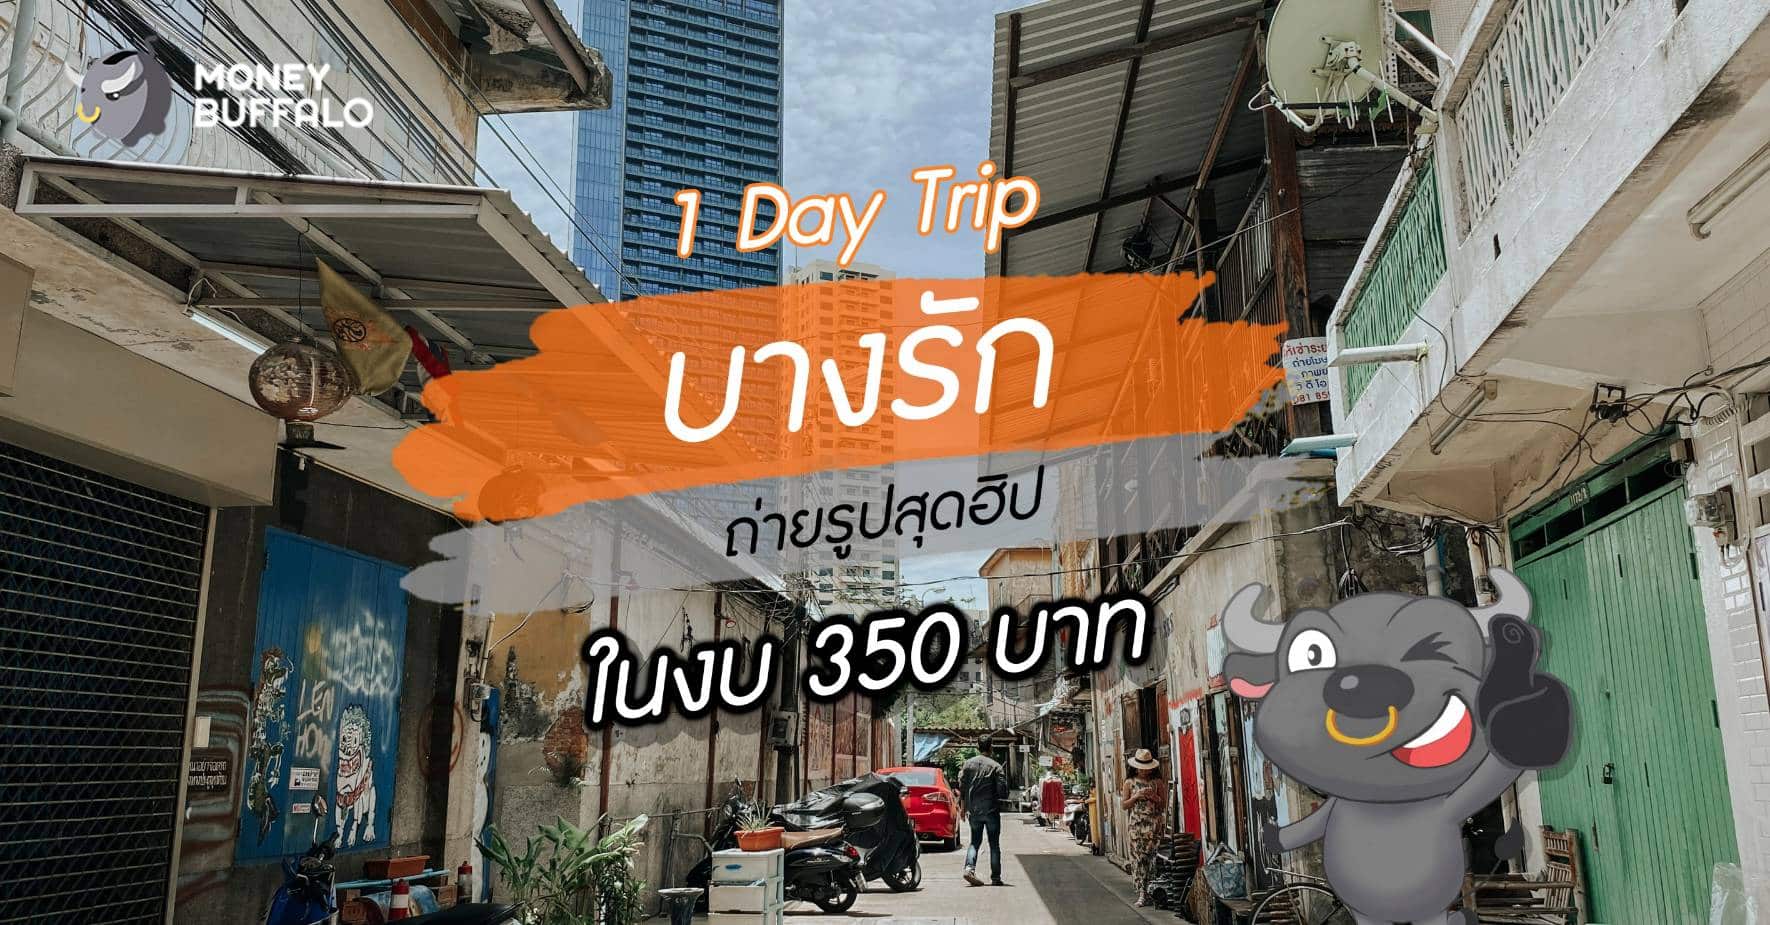 “1 Day Trip บางรัก” ถ่ายรูปสุดฮิป ในงบไม่เกิน 350 บาท